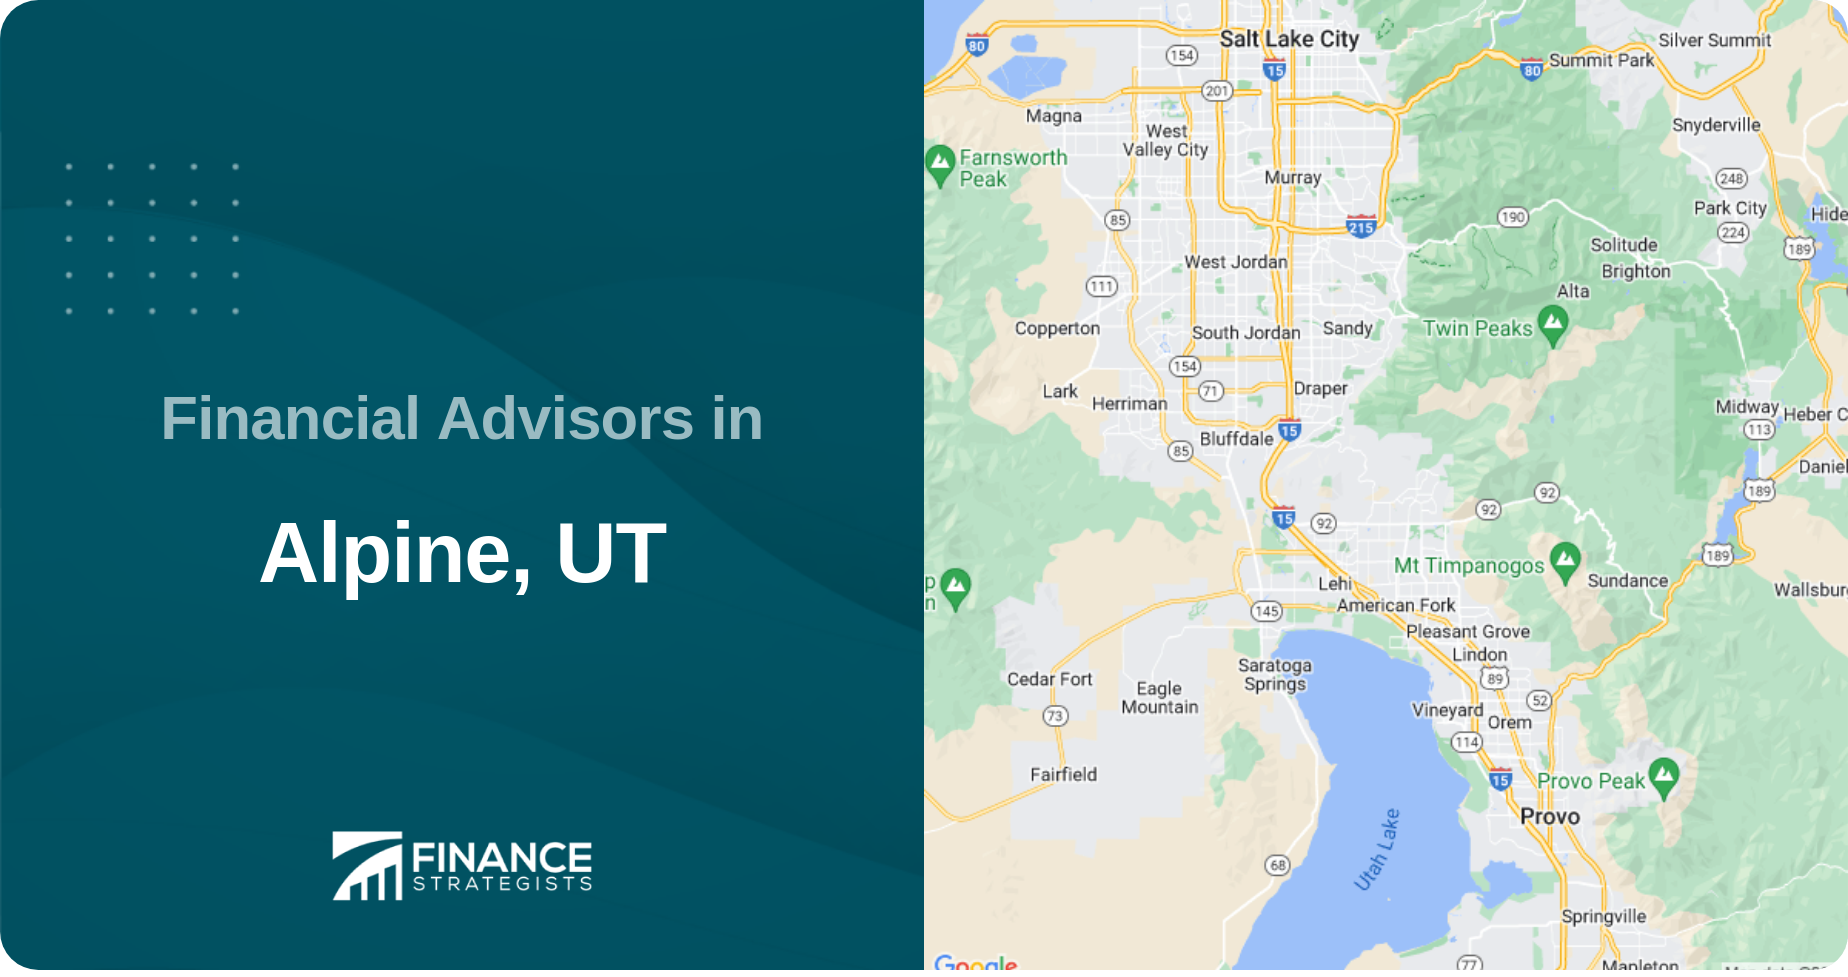 Financial Advisors in Alpine, UT